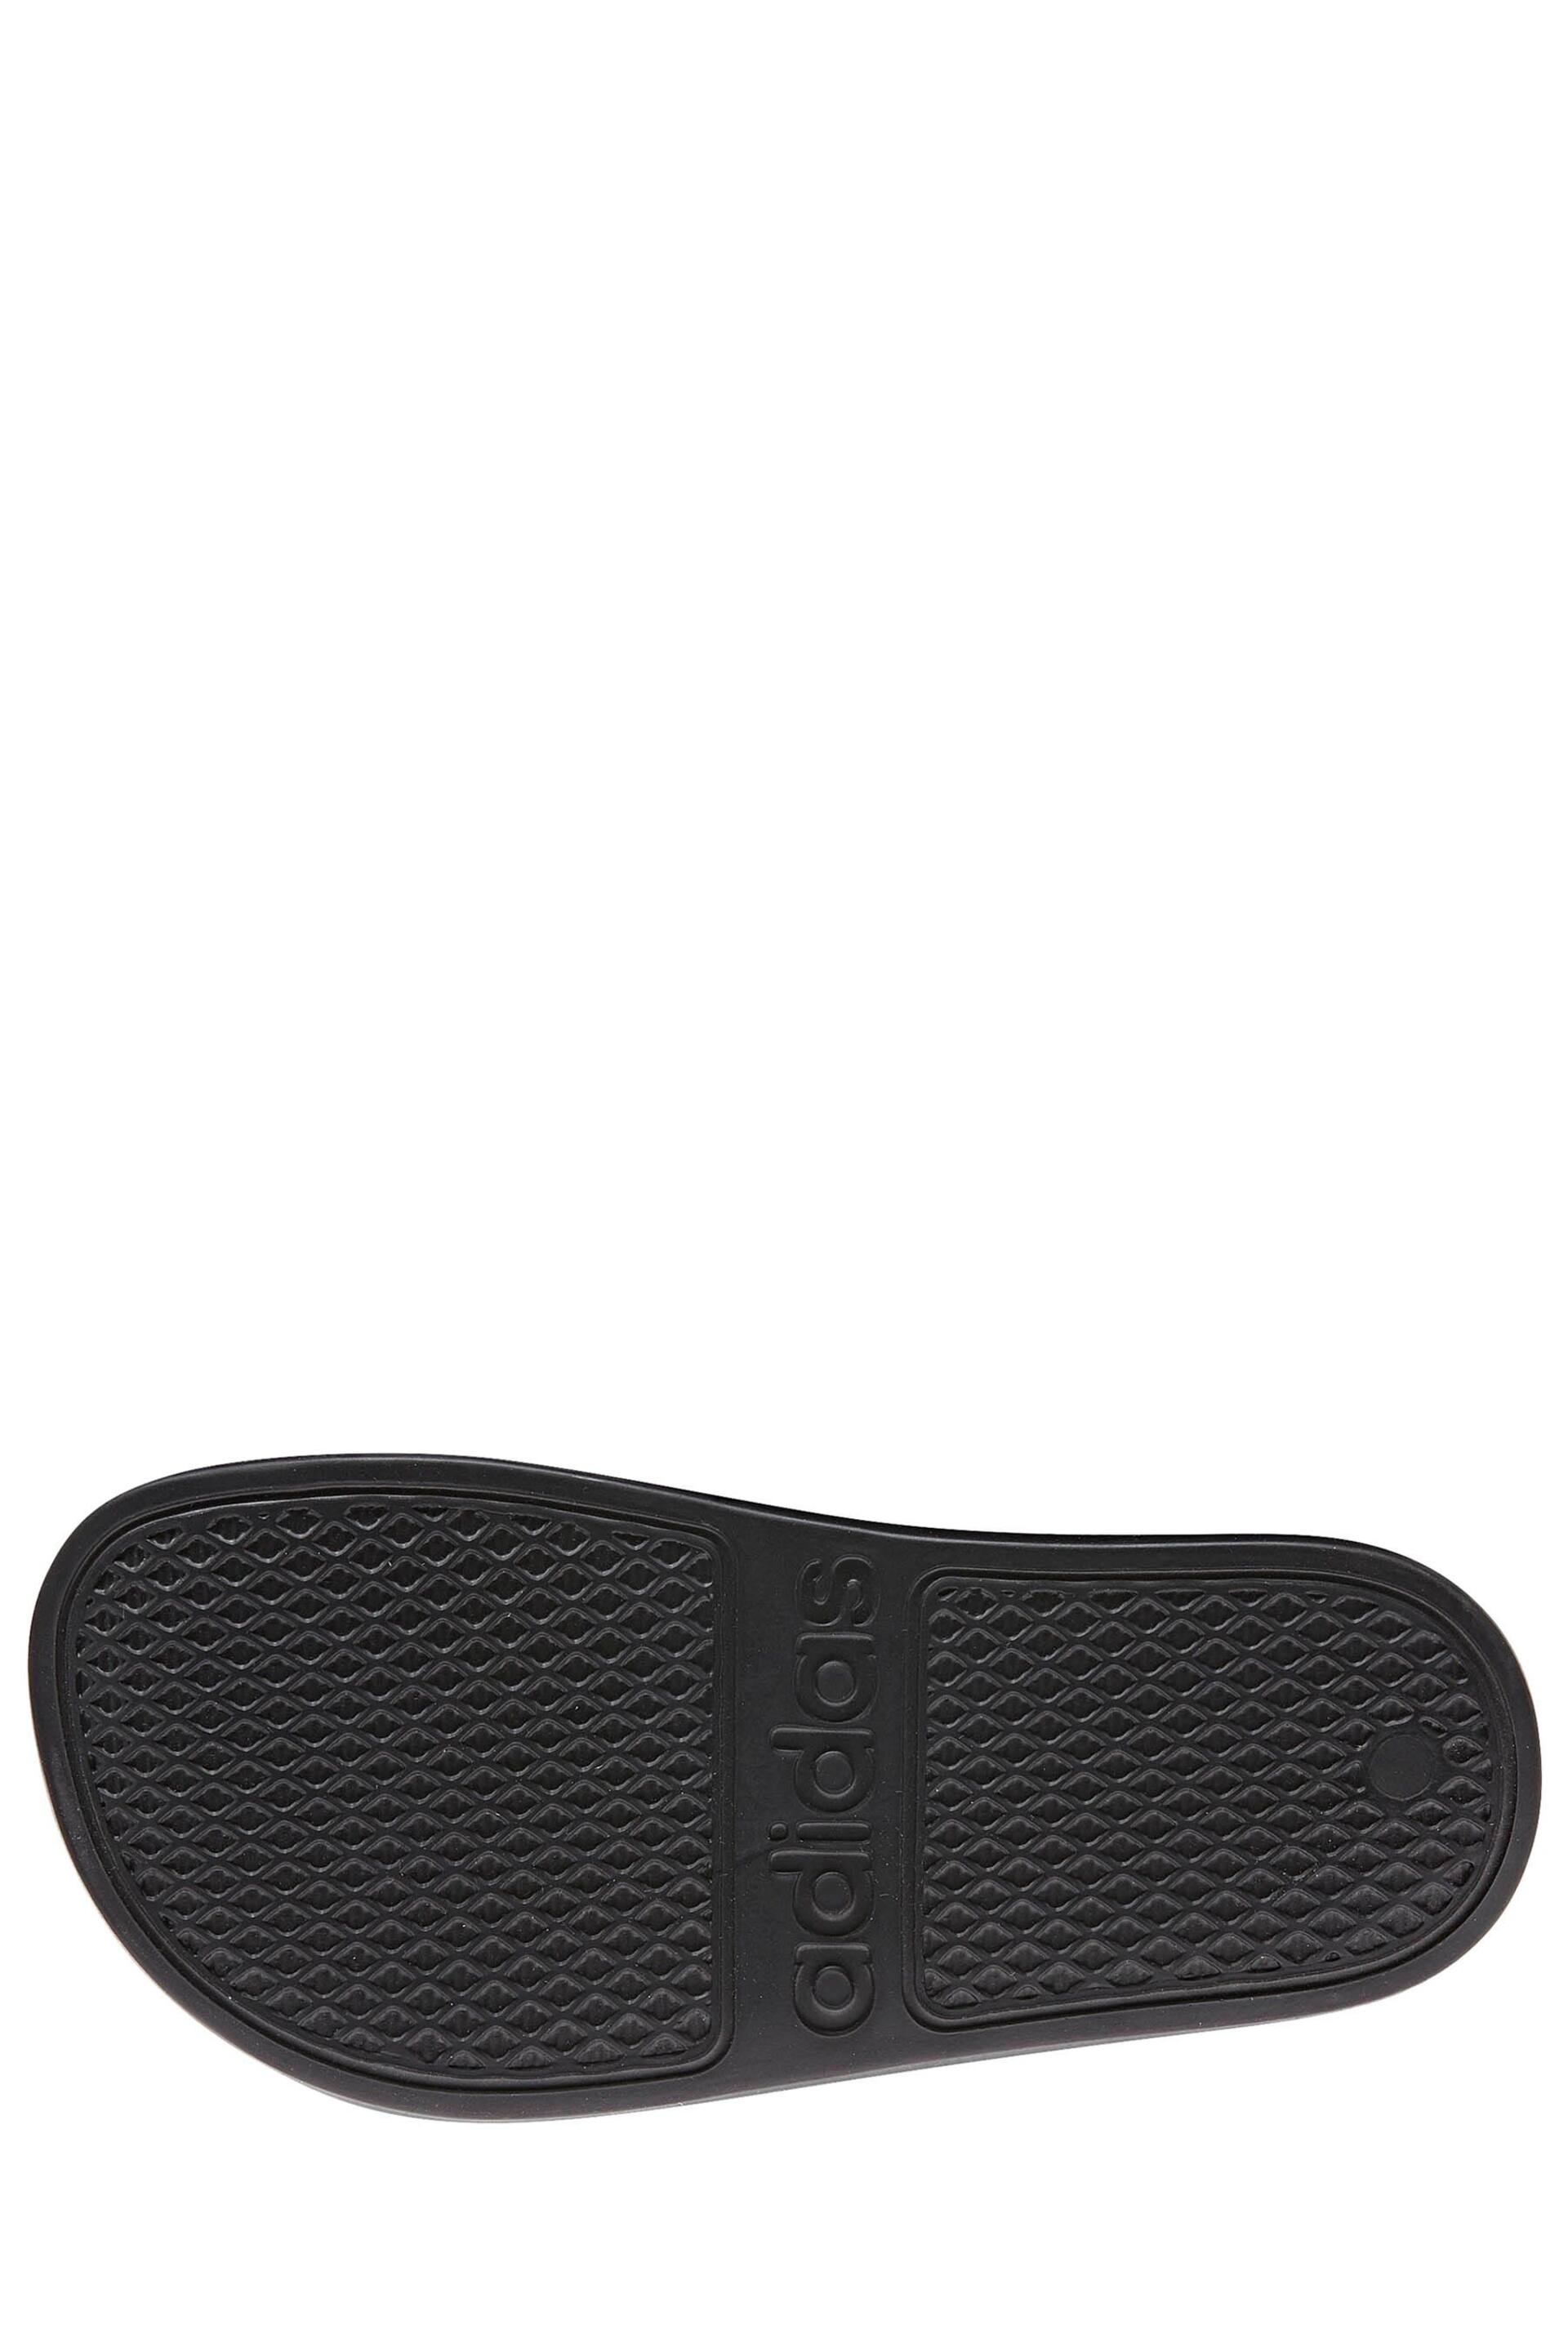 adidas Black Adilette Youth Kids Sliders - Image 4 of 5